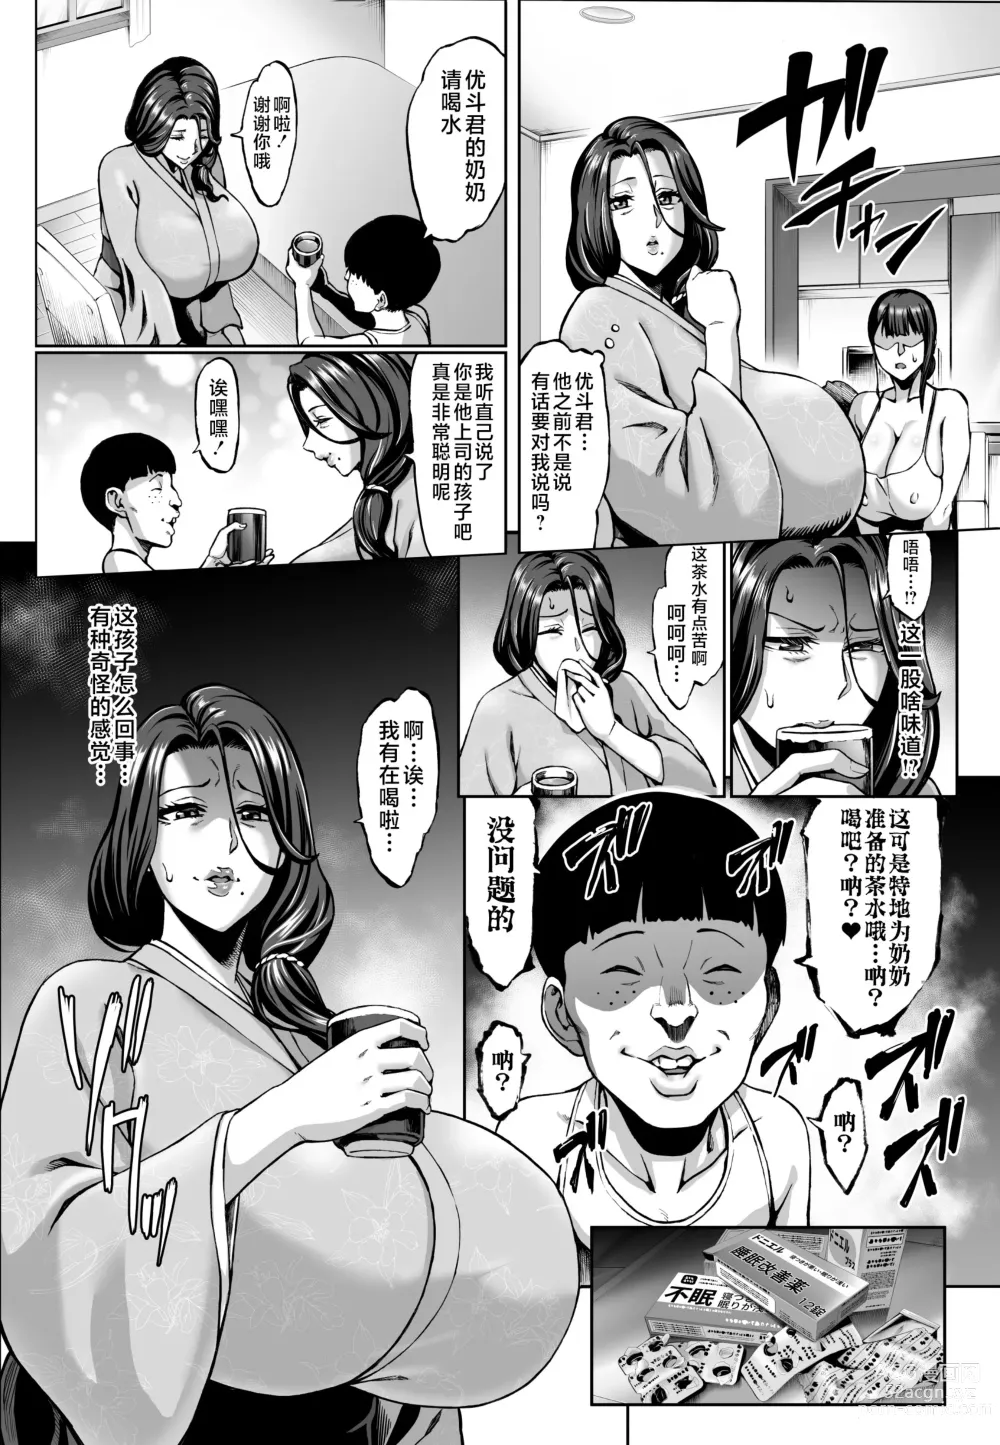 Page 4 of doujinshi Omae no Kaa-chan Ikutoki no Kao Sugee Busu da zo w 2 + Omake